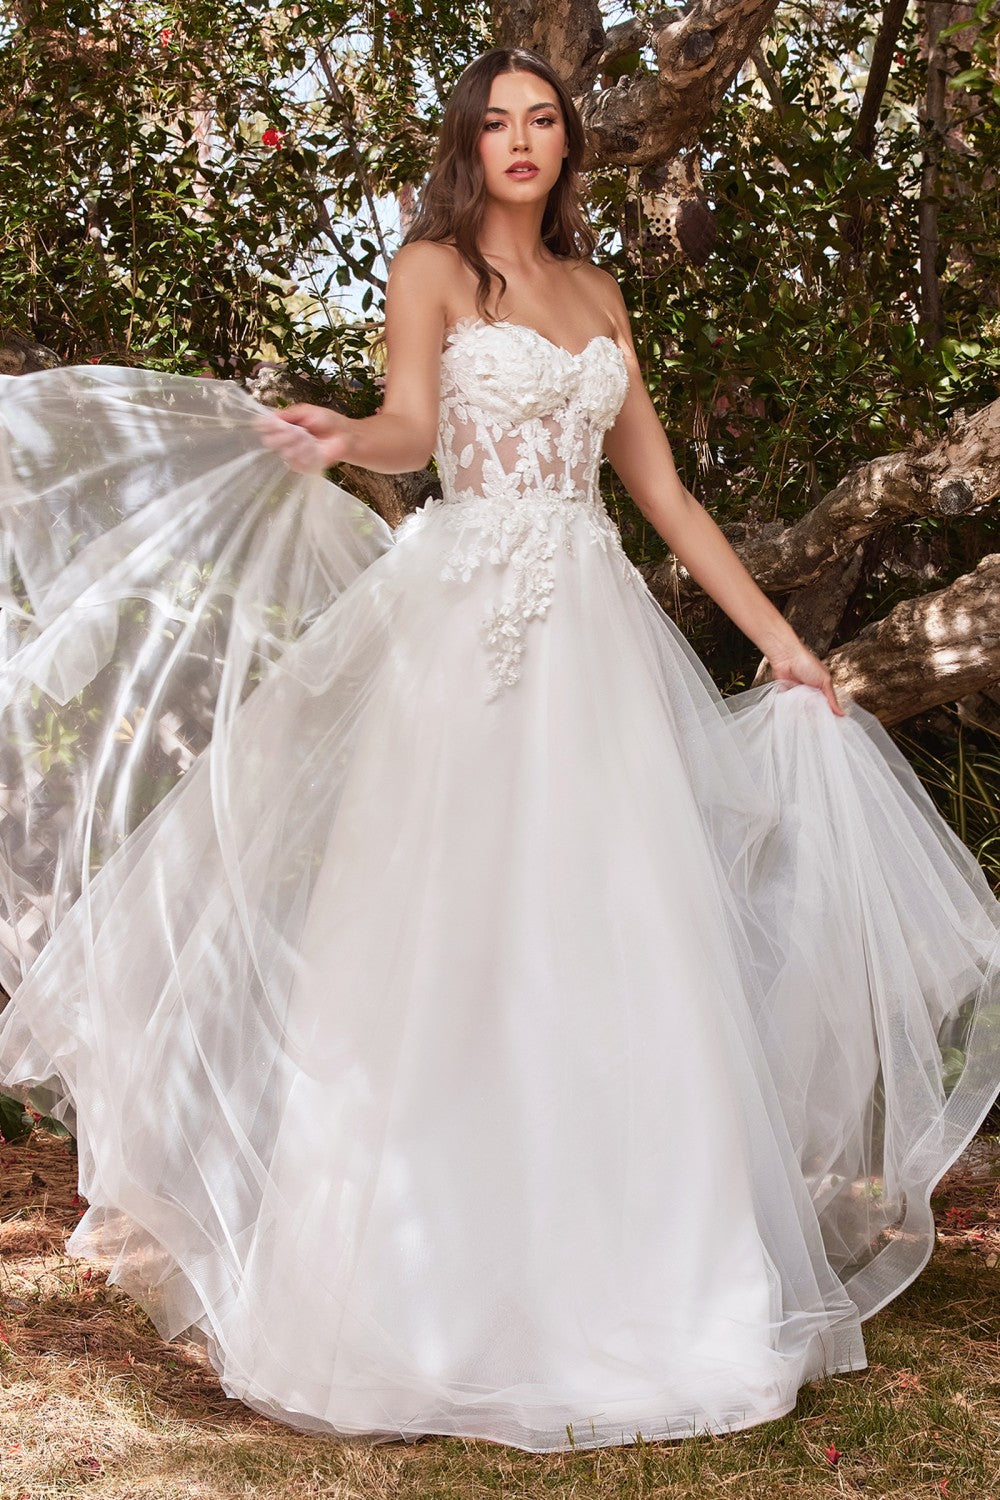 Lace Vintage Sweet Princess Style Strapless Off Shoulder Wedding & Bride Gown 3D Floral Appliqués Romantic Vibes Dress CDCD962W-1